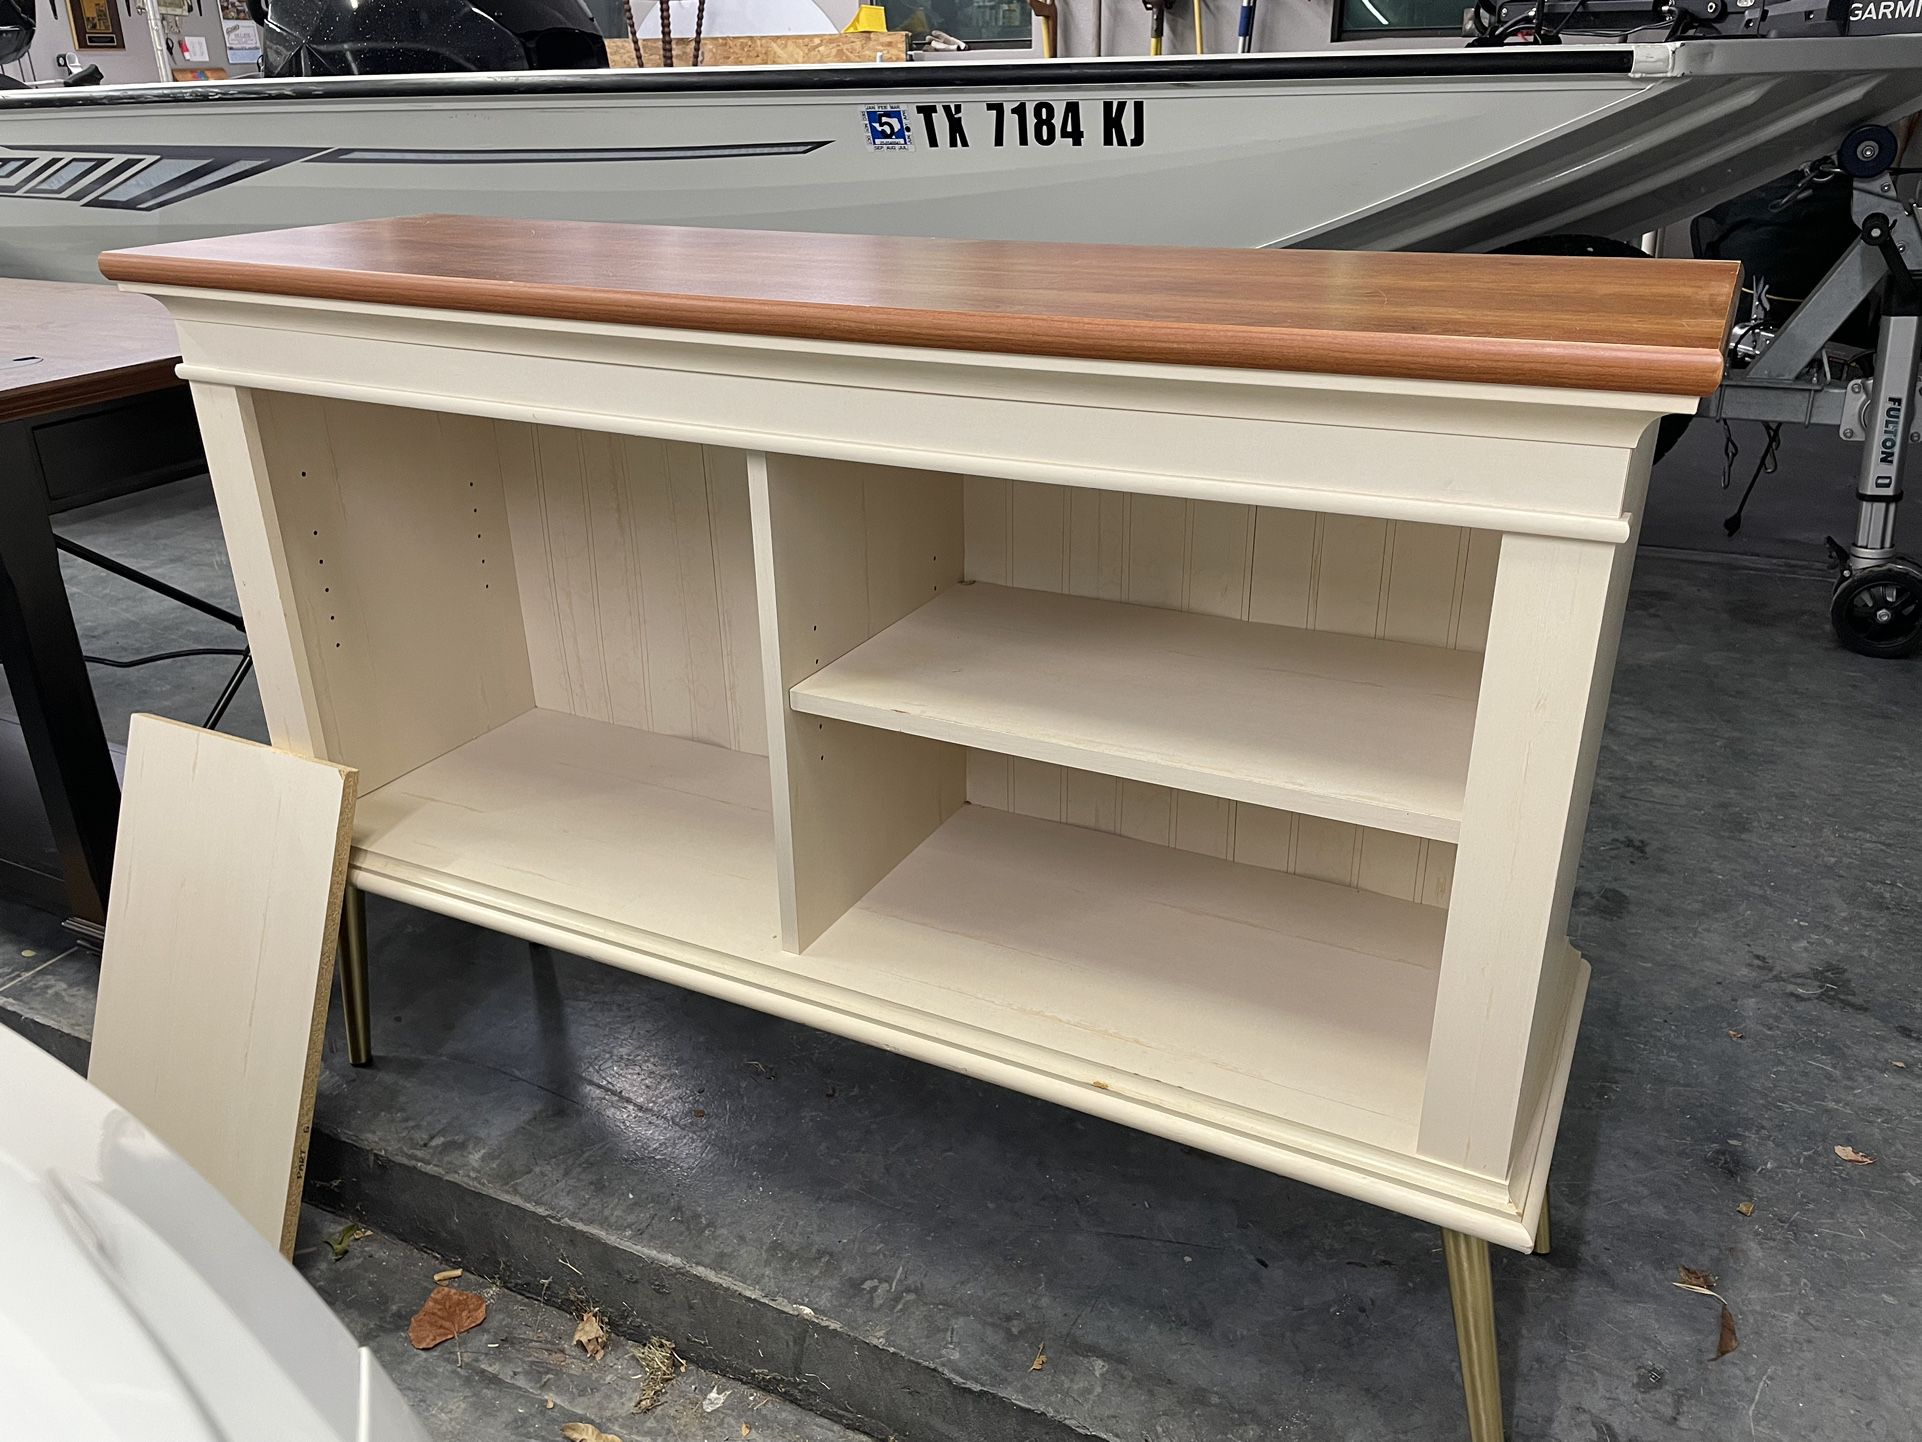 MCM Bookshelf, Sideboard - $150